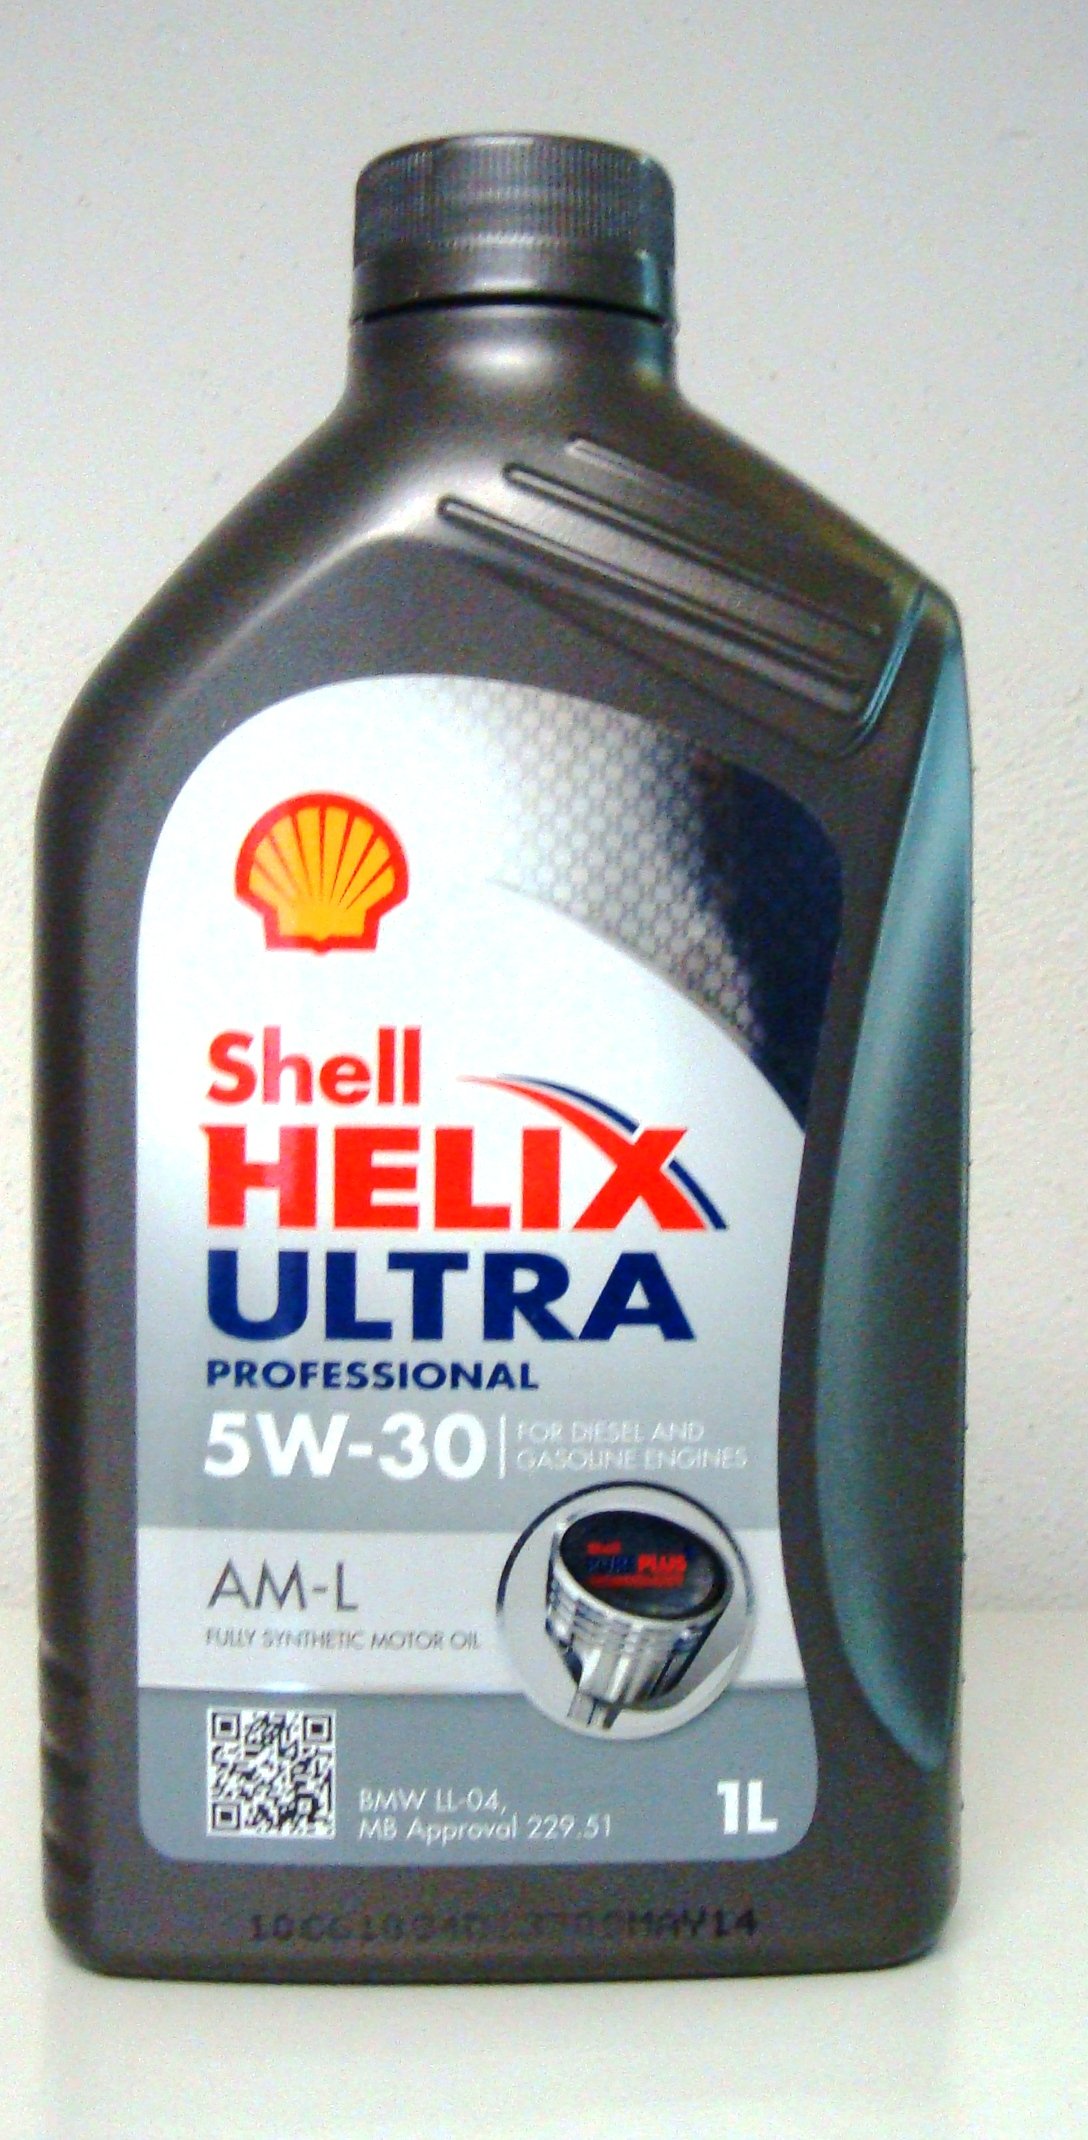 1L 1 Liter SHELL HELIX ULTRA PROFESSIONAL AM-L 5W-30 Motoröl BMW LL-04 MB 229.51 von Shell